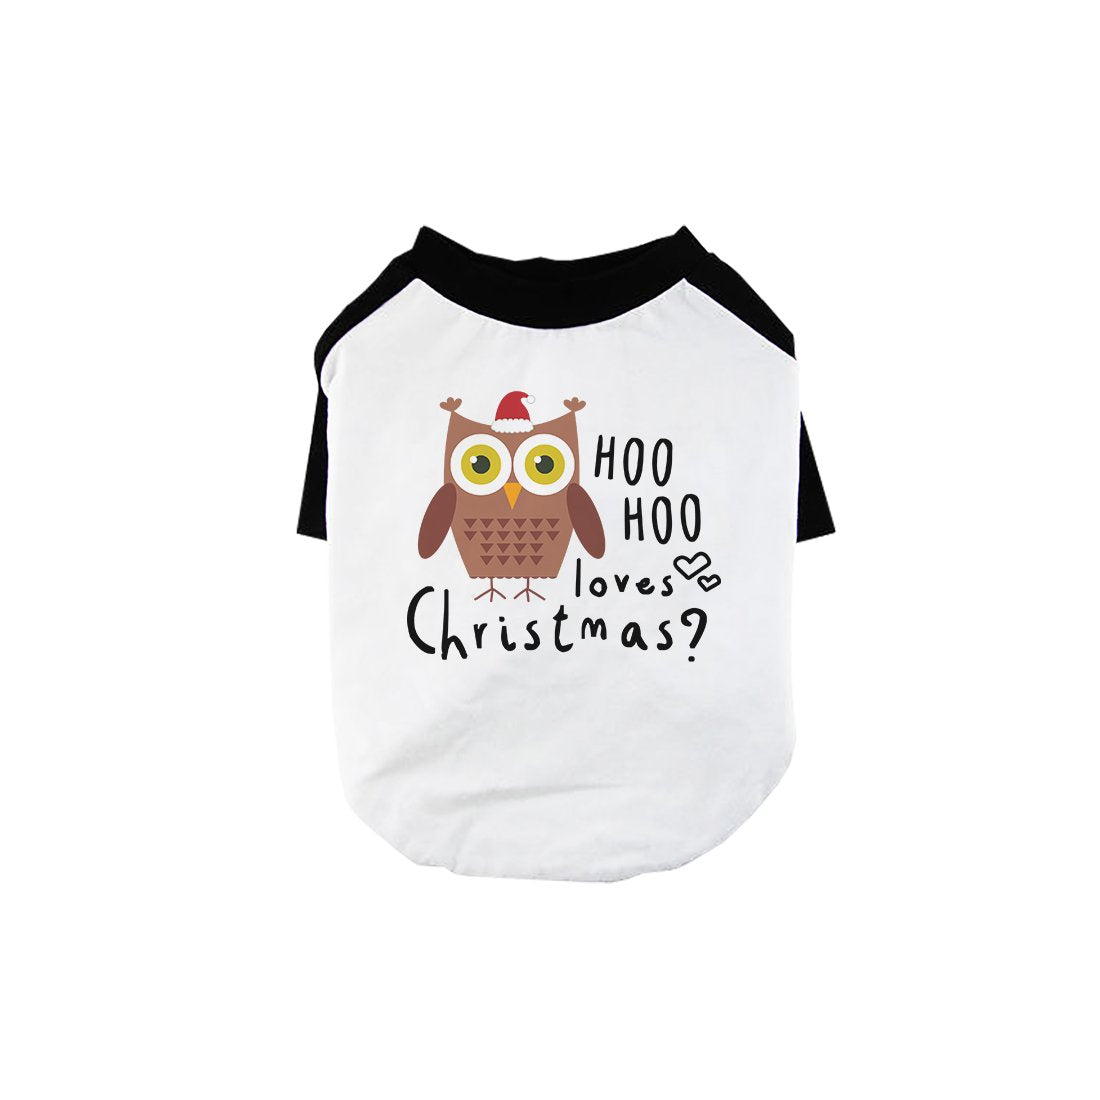 Hoo Christmas Owl Pet Baseball Shirt for Small Dogs